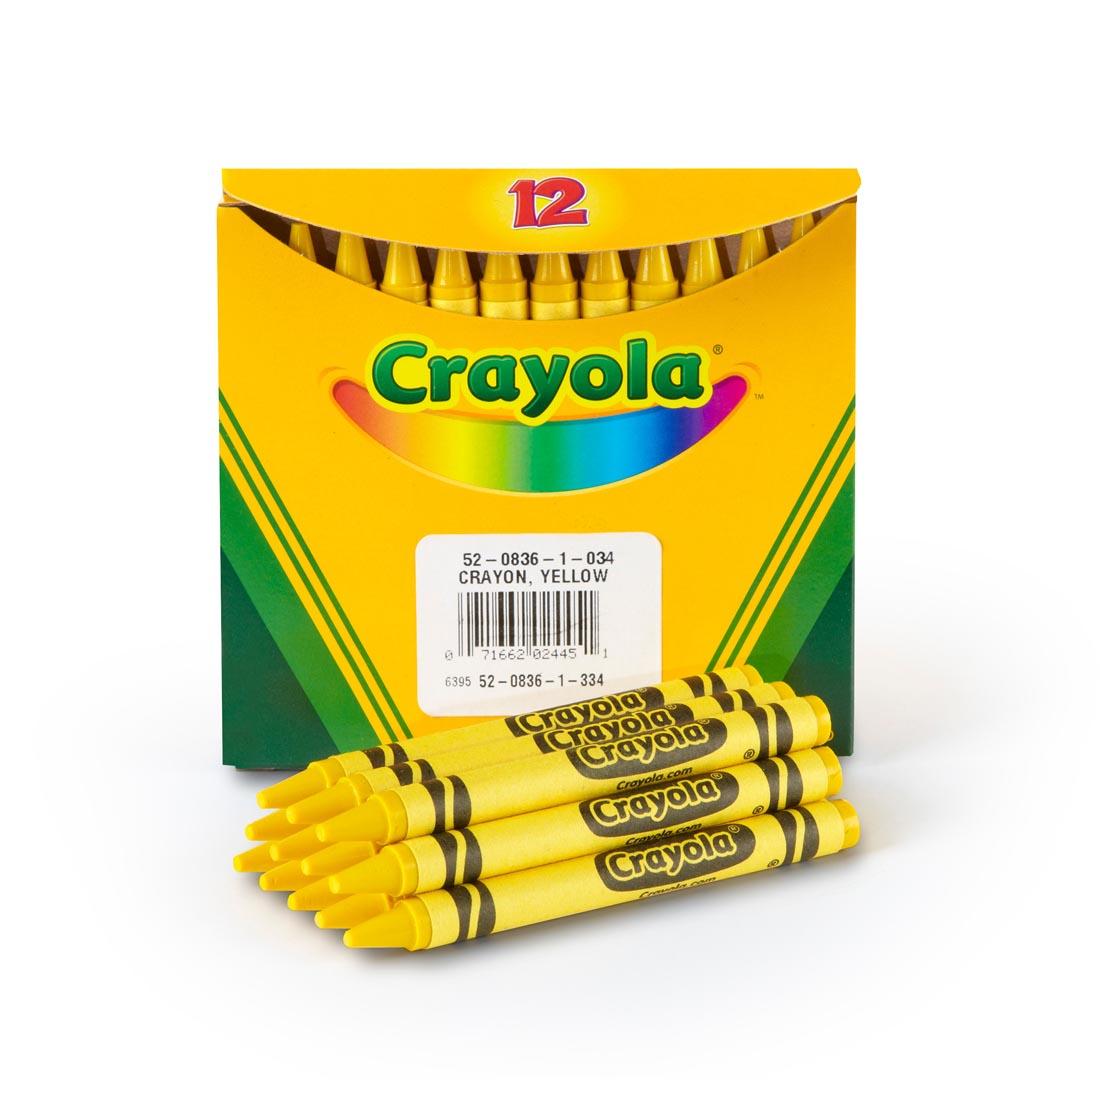 Box of Crayola Regular Crayon Refills with 12 Yellow Crayons